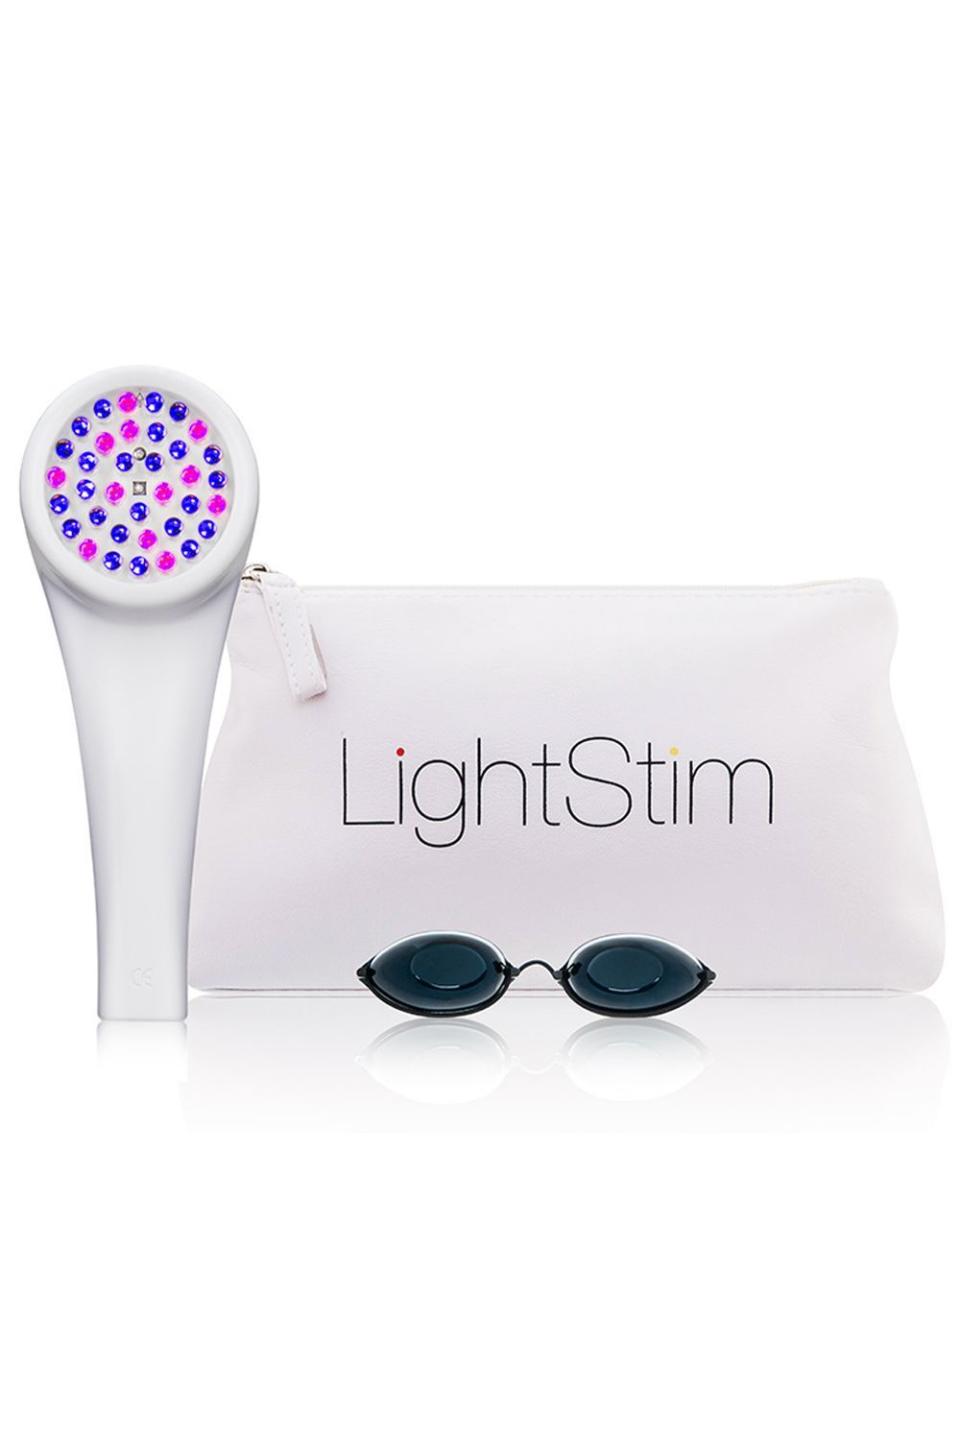 4) LightStim LED Light for Acne